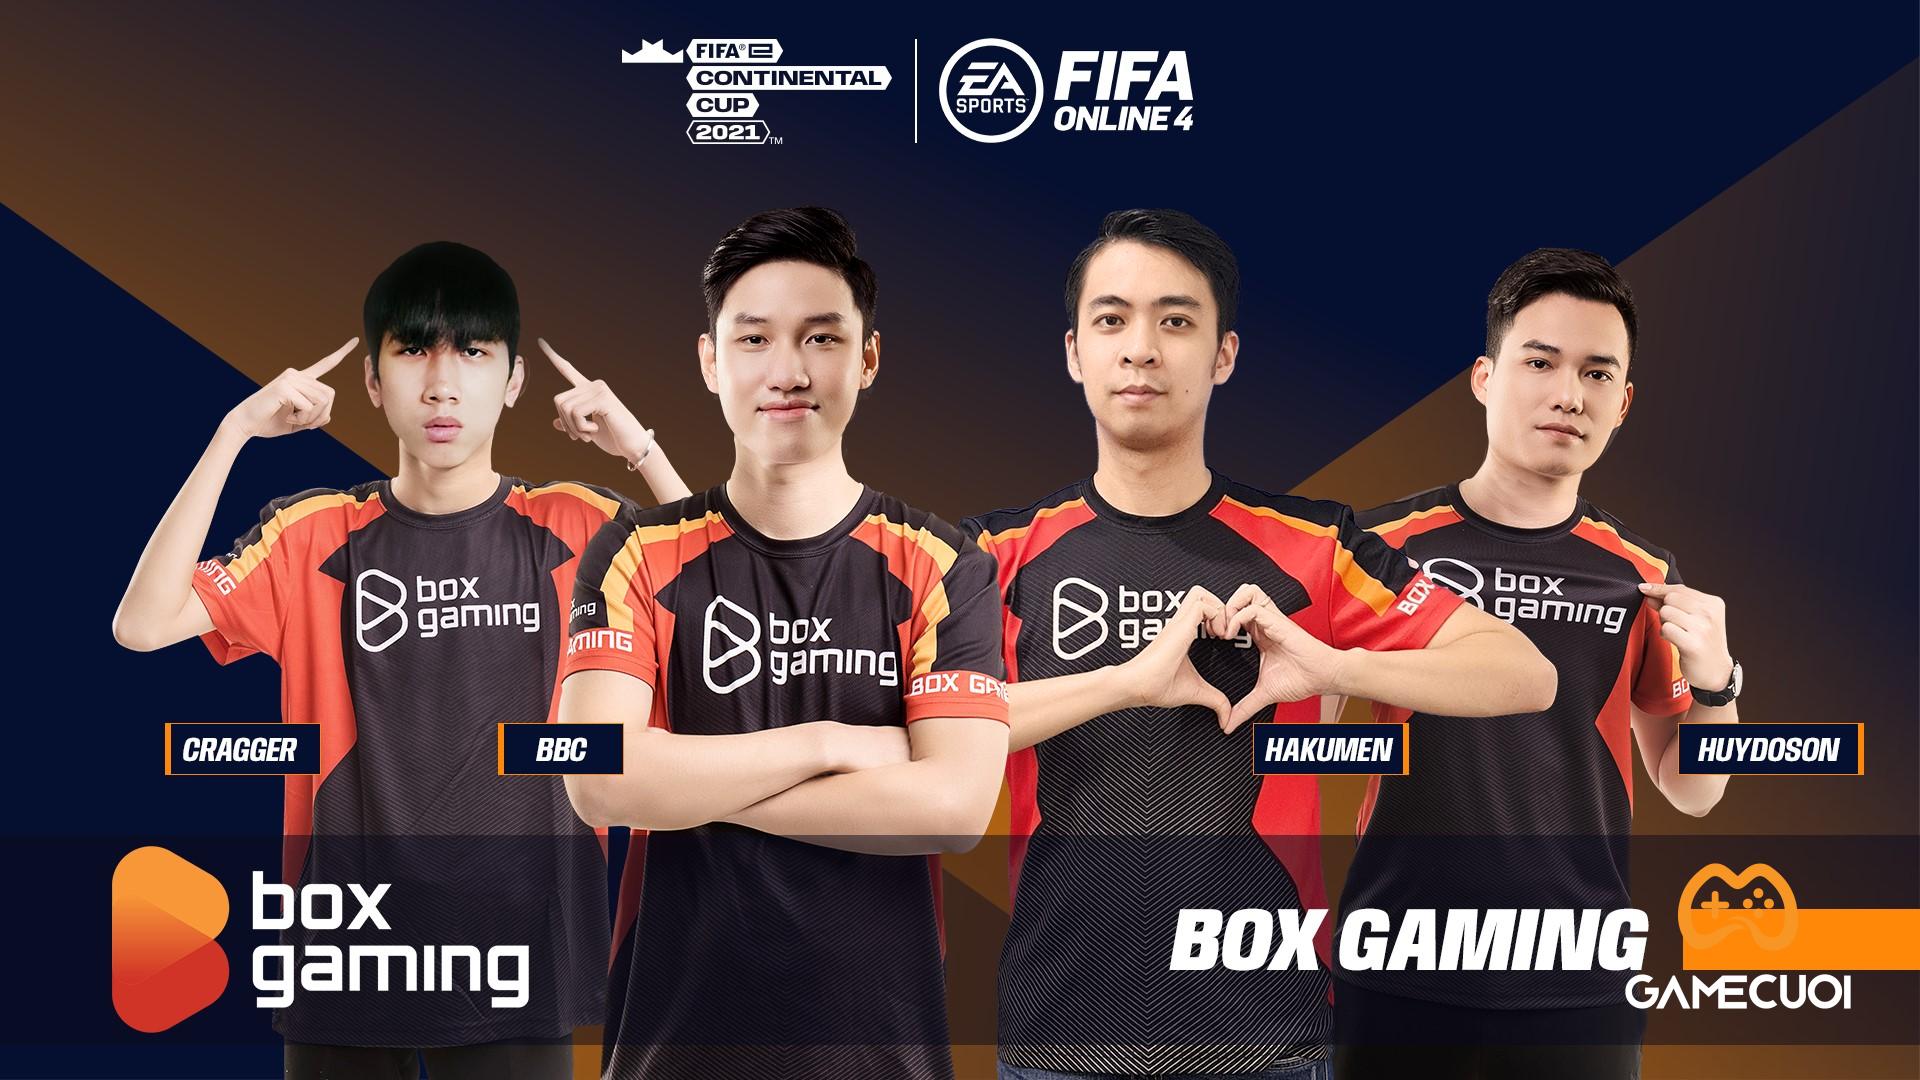 Box Gaming xuất sắc tiến vào vòng loại trực tiếp FIFAe Continental Cup 2021 với vị trí đầu bảng